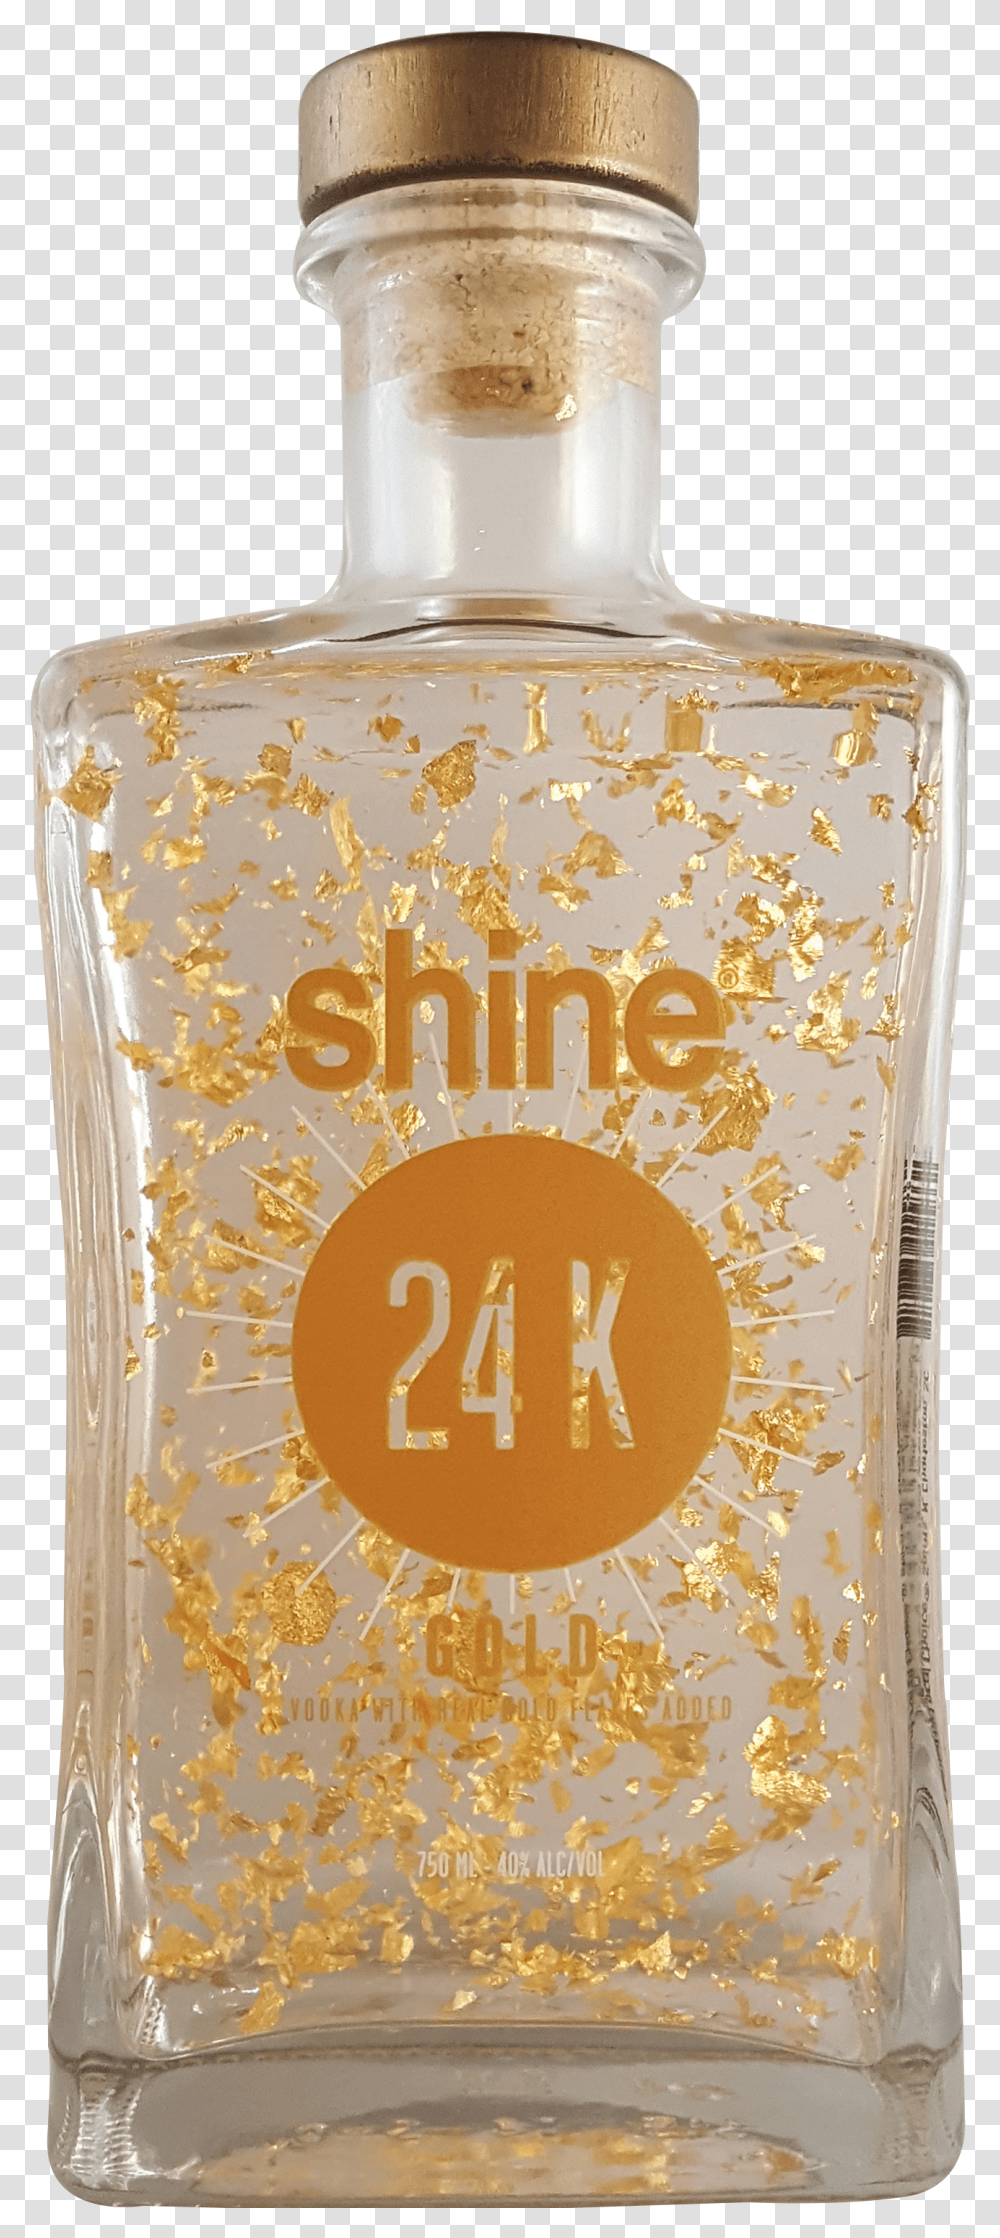 Shine 24k Vodka Transparent Png